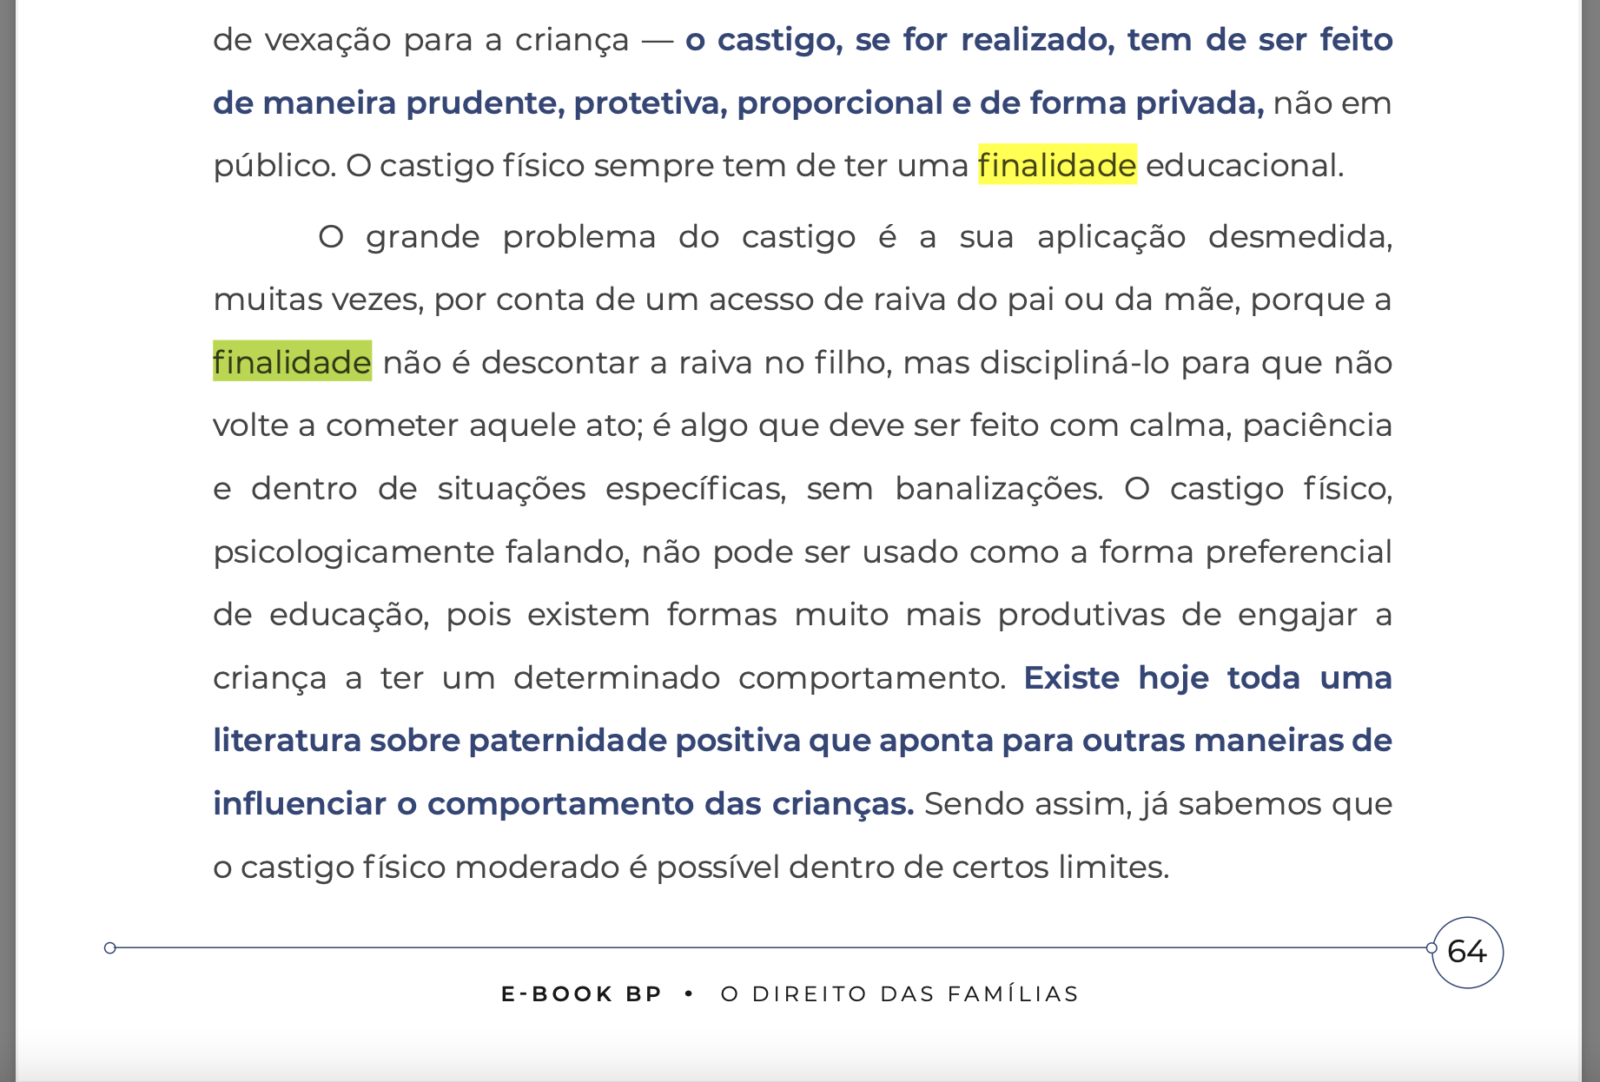 Print de trecho do curso online “O Direito da Família”, de Alexandre Magno Moreira. Reprodução